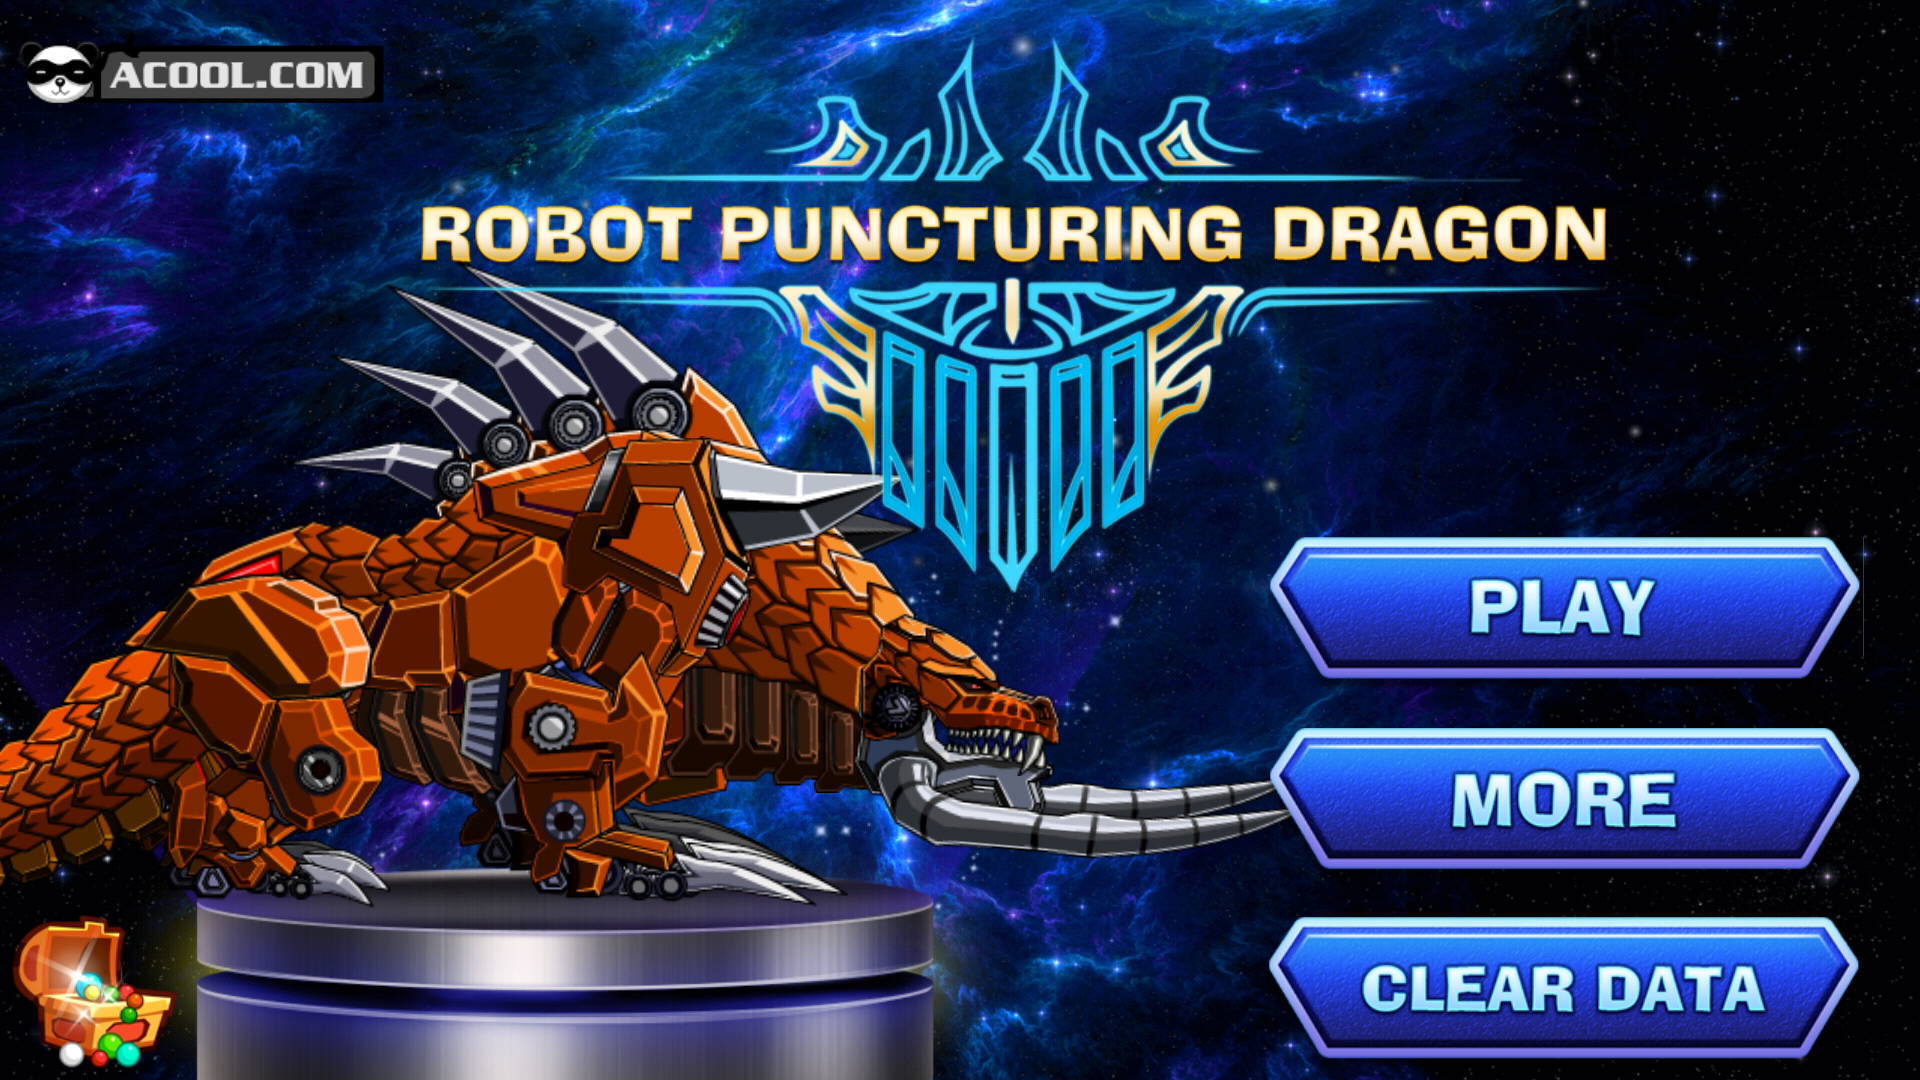 Screenshot 1 of Toy RobotWar: Puncturing Dragon 1.0.0